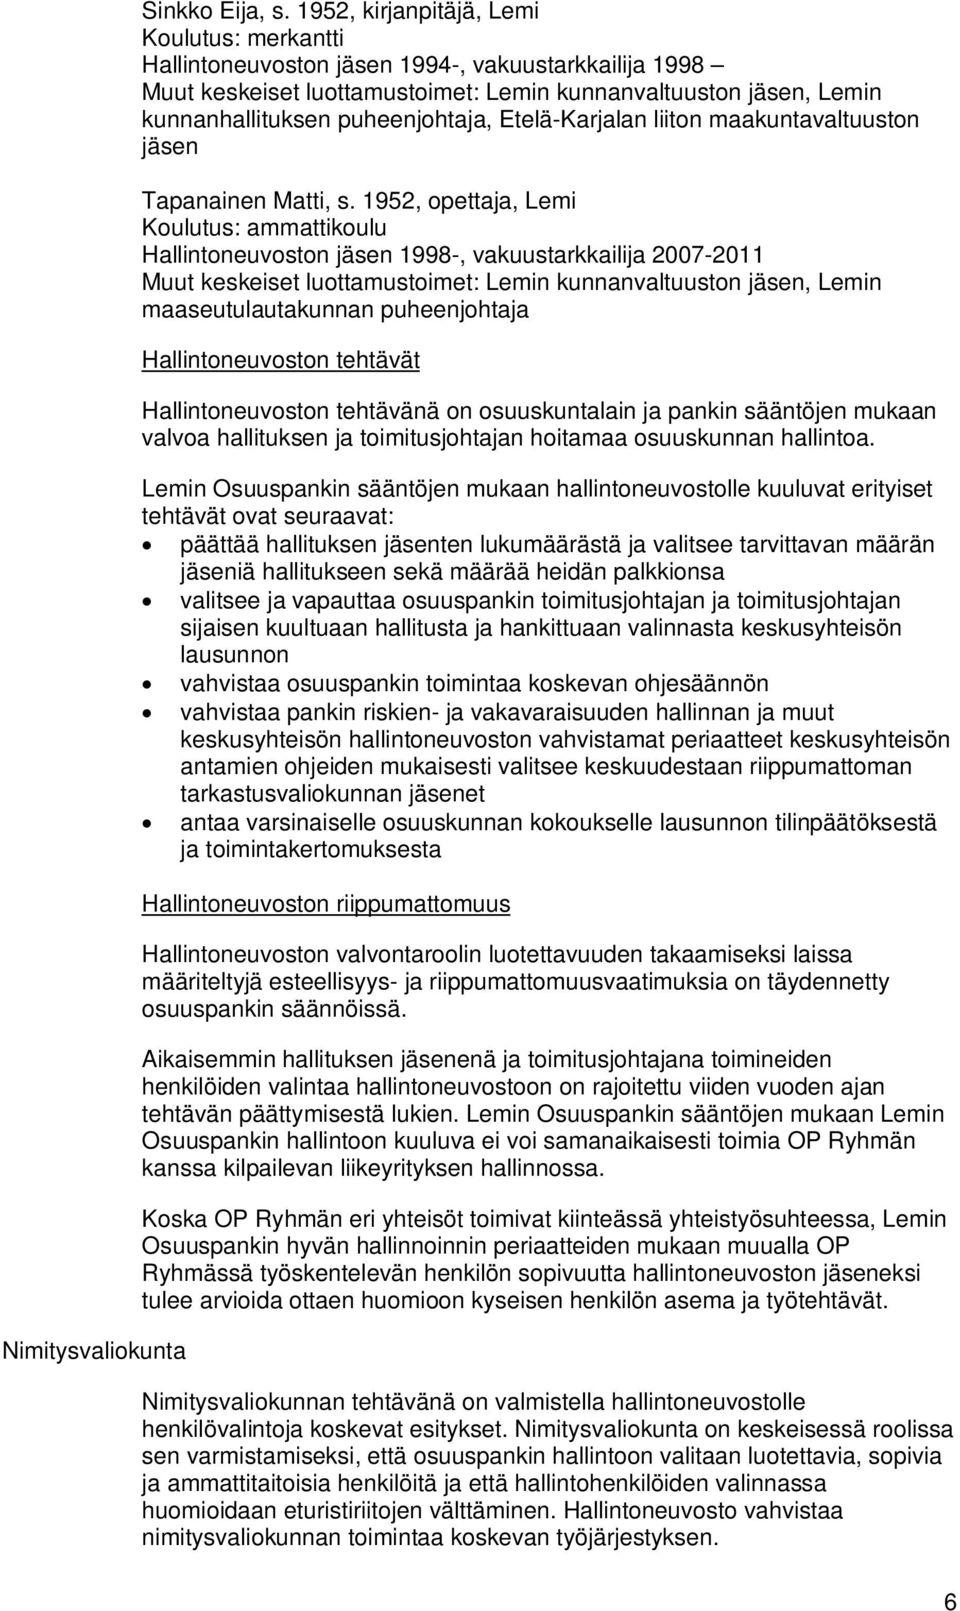 Etelä-Karjalan liiton maakuntavaltuuston jäsen Tapanainen Matti, s.